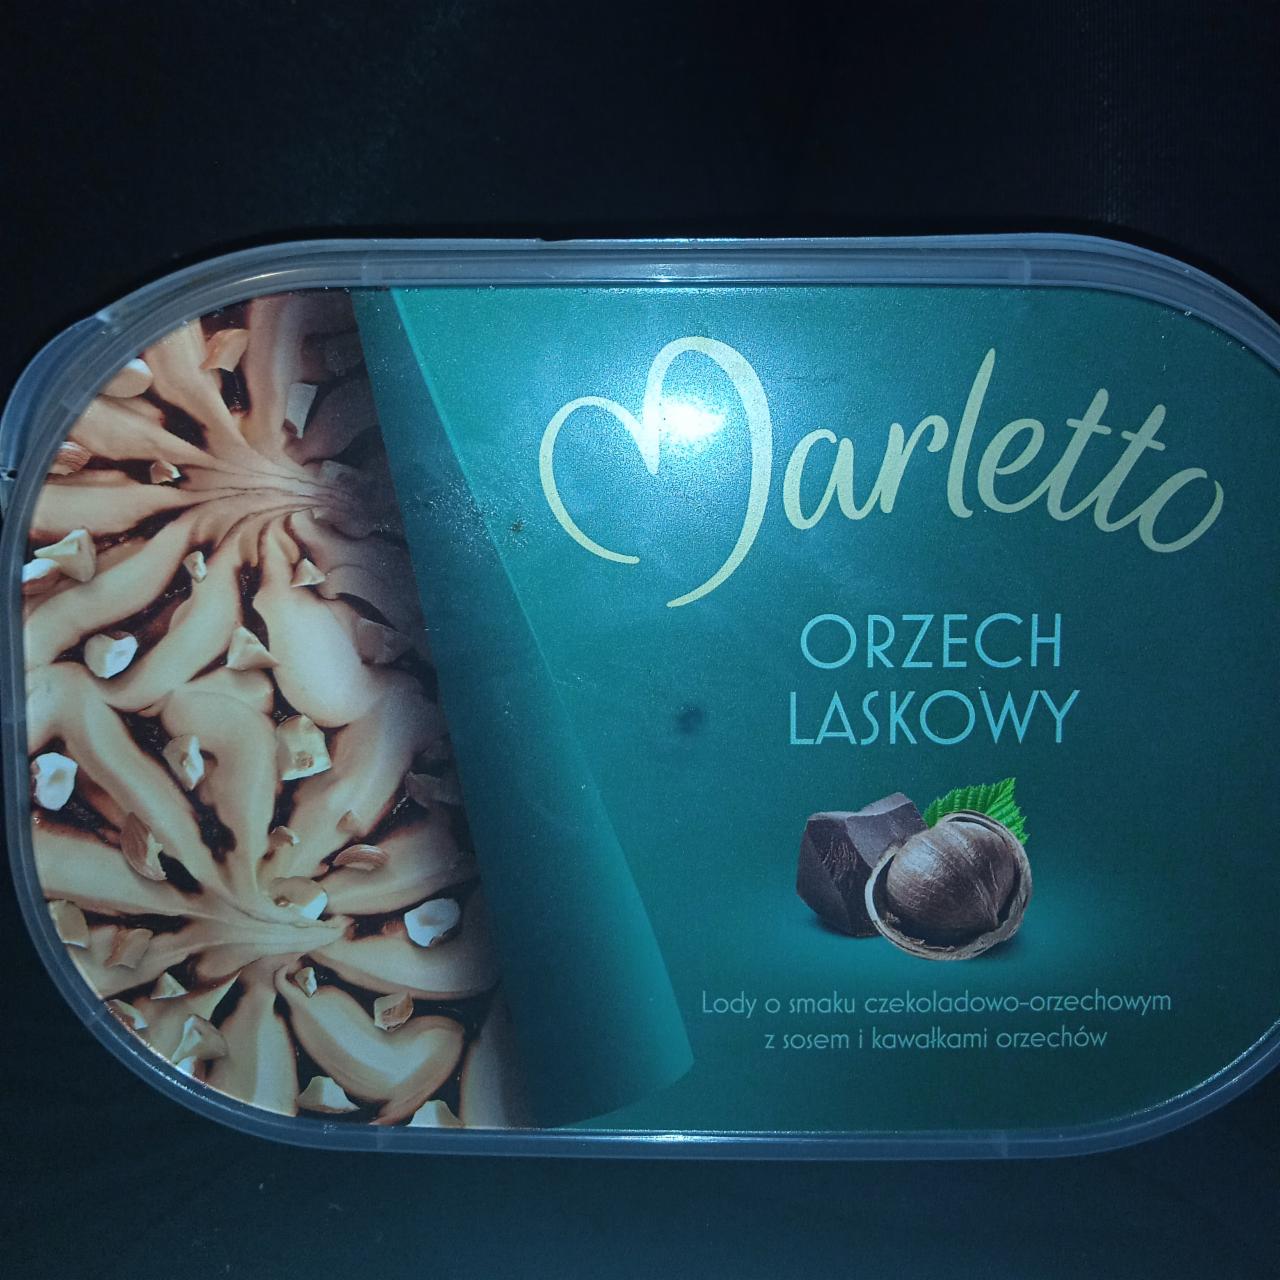 Фото - Мороженое шоколадное со вкусом лесного ореха Marletto